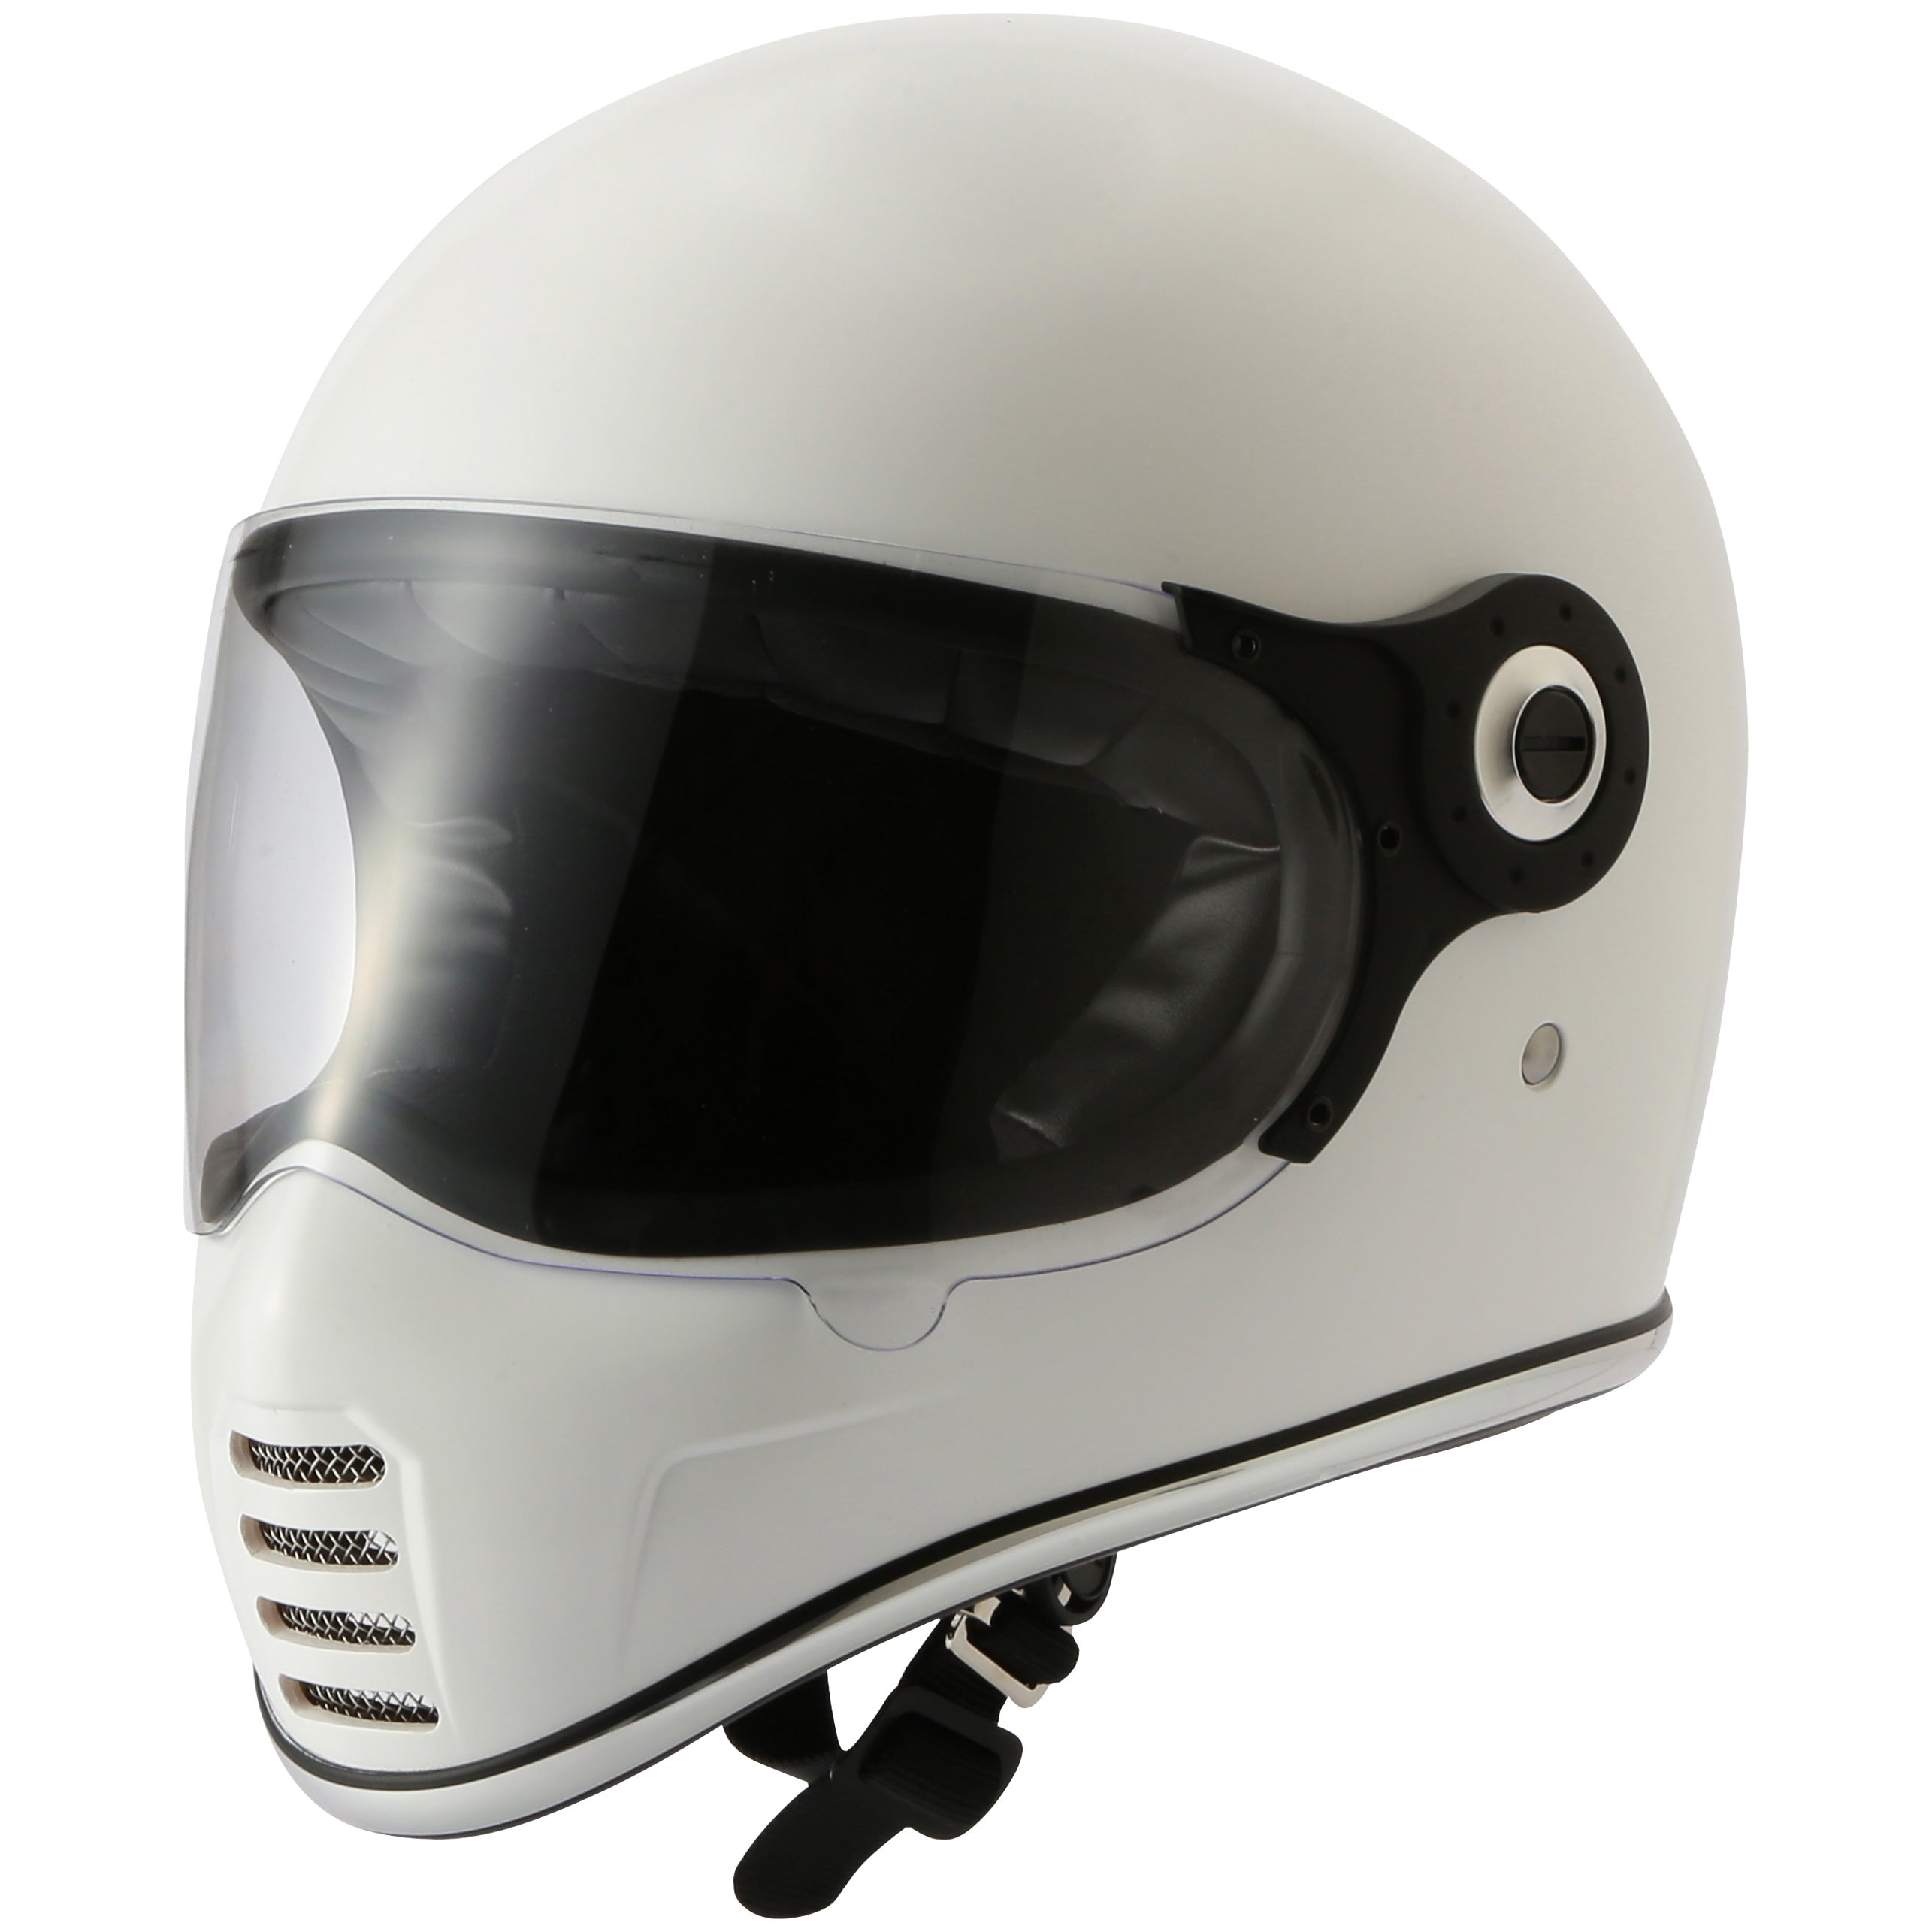 RIDEZ XX WHITE motorcycle full face helmet 